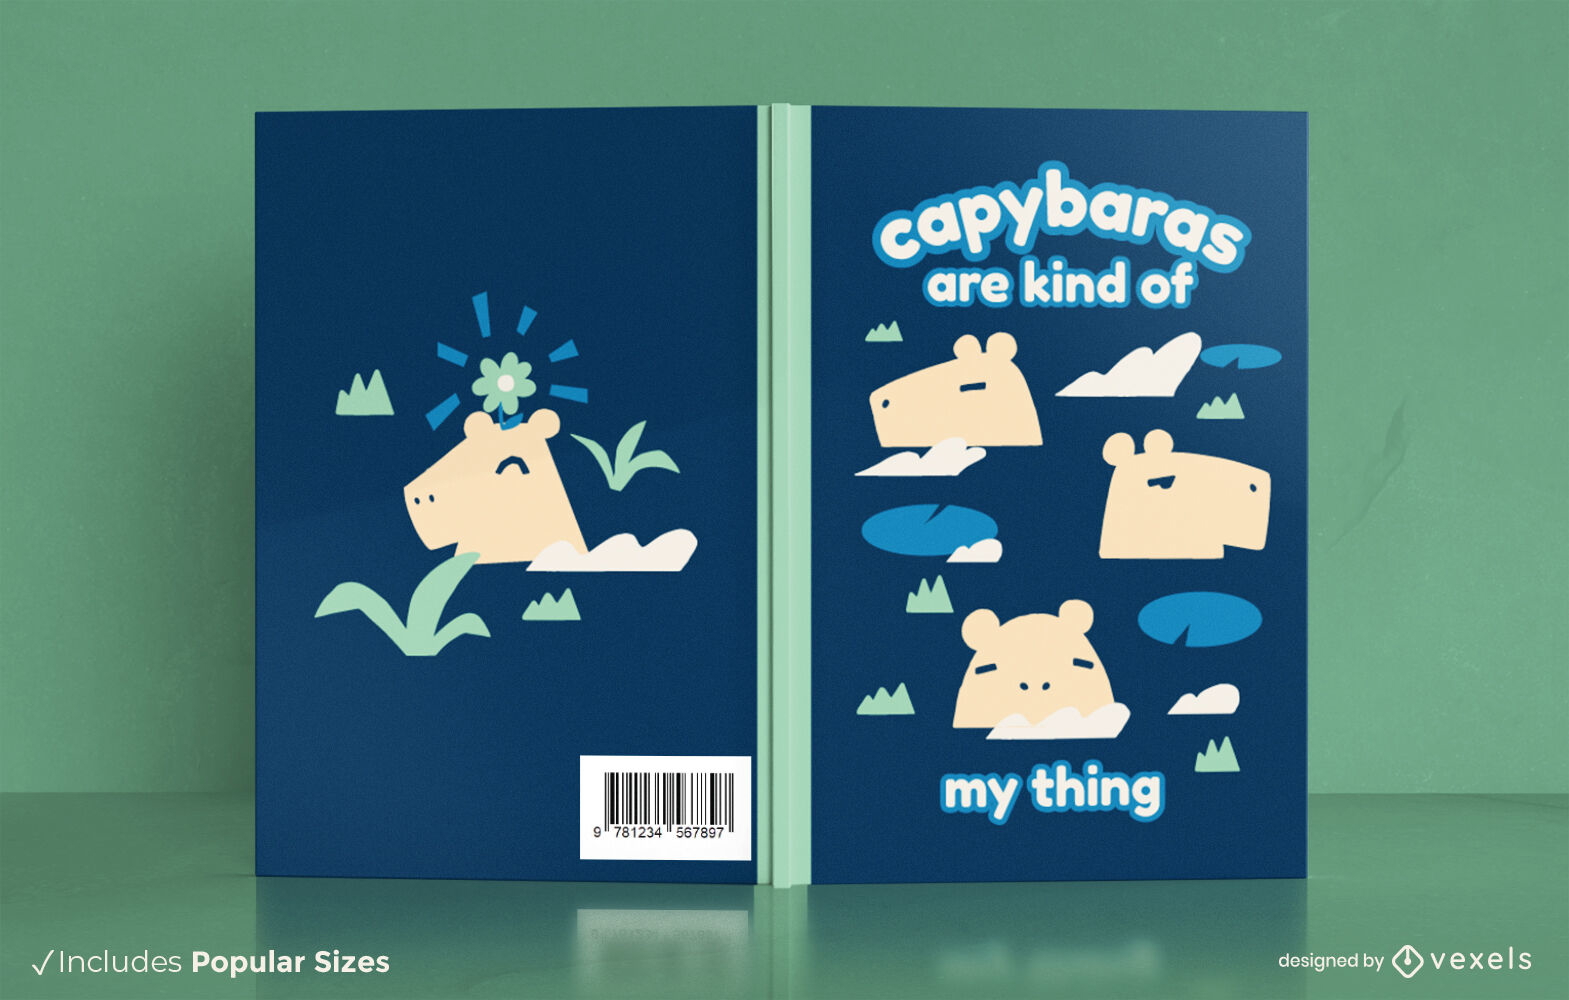 Capybaras book cover design